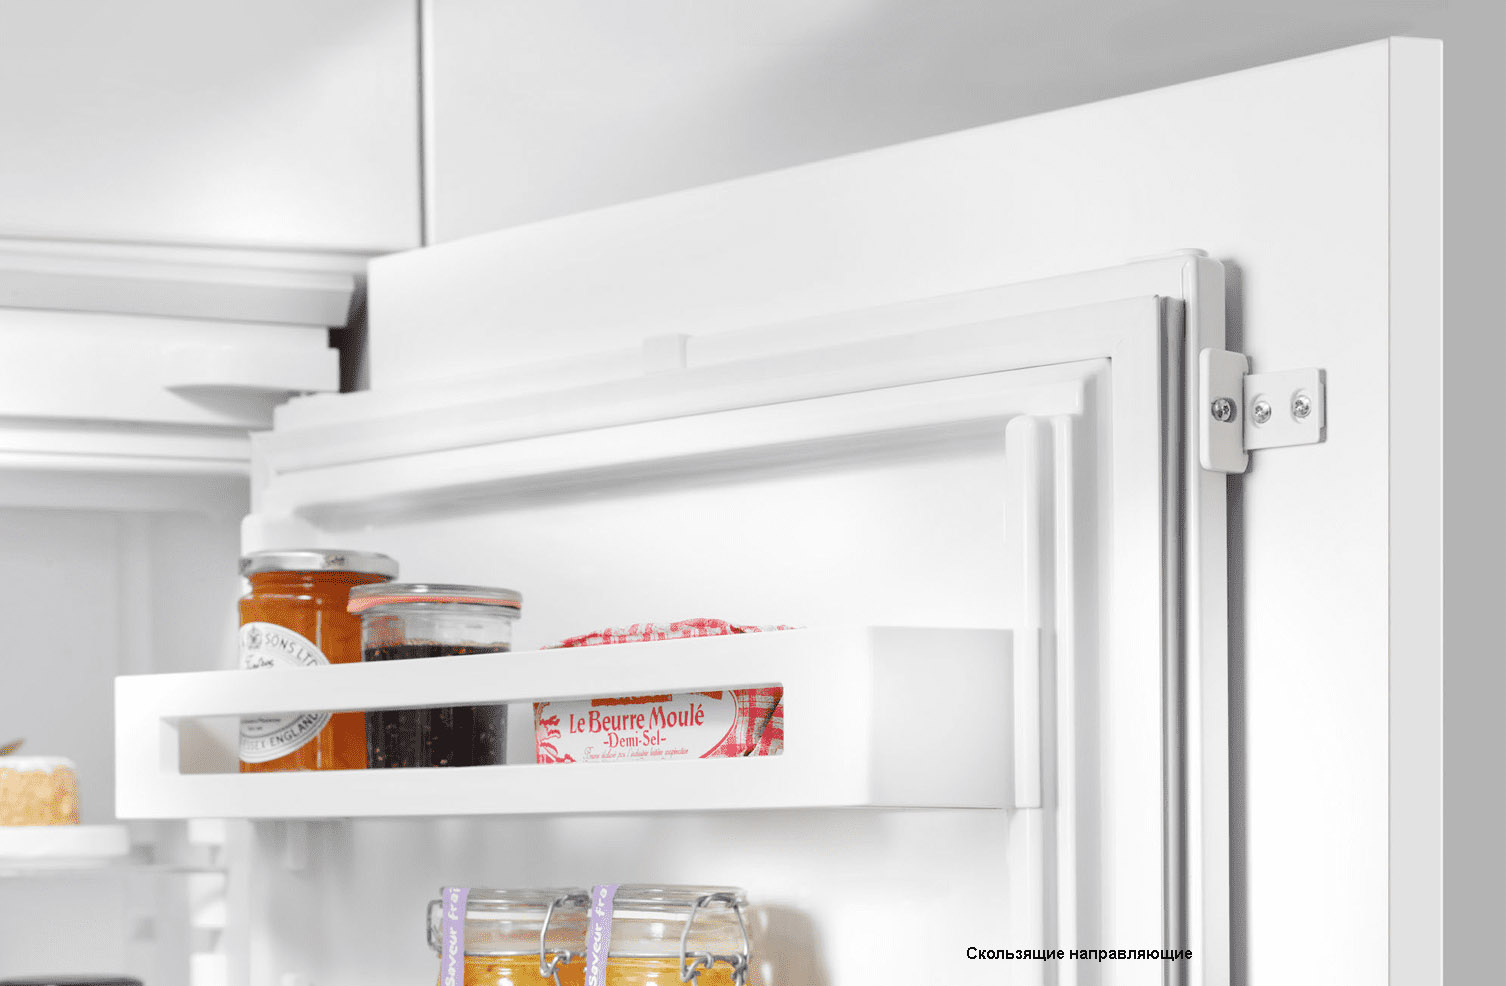  холодильники: какой тип крепления фасадов предпочесть .